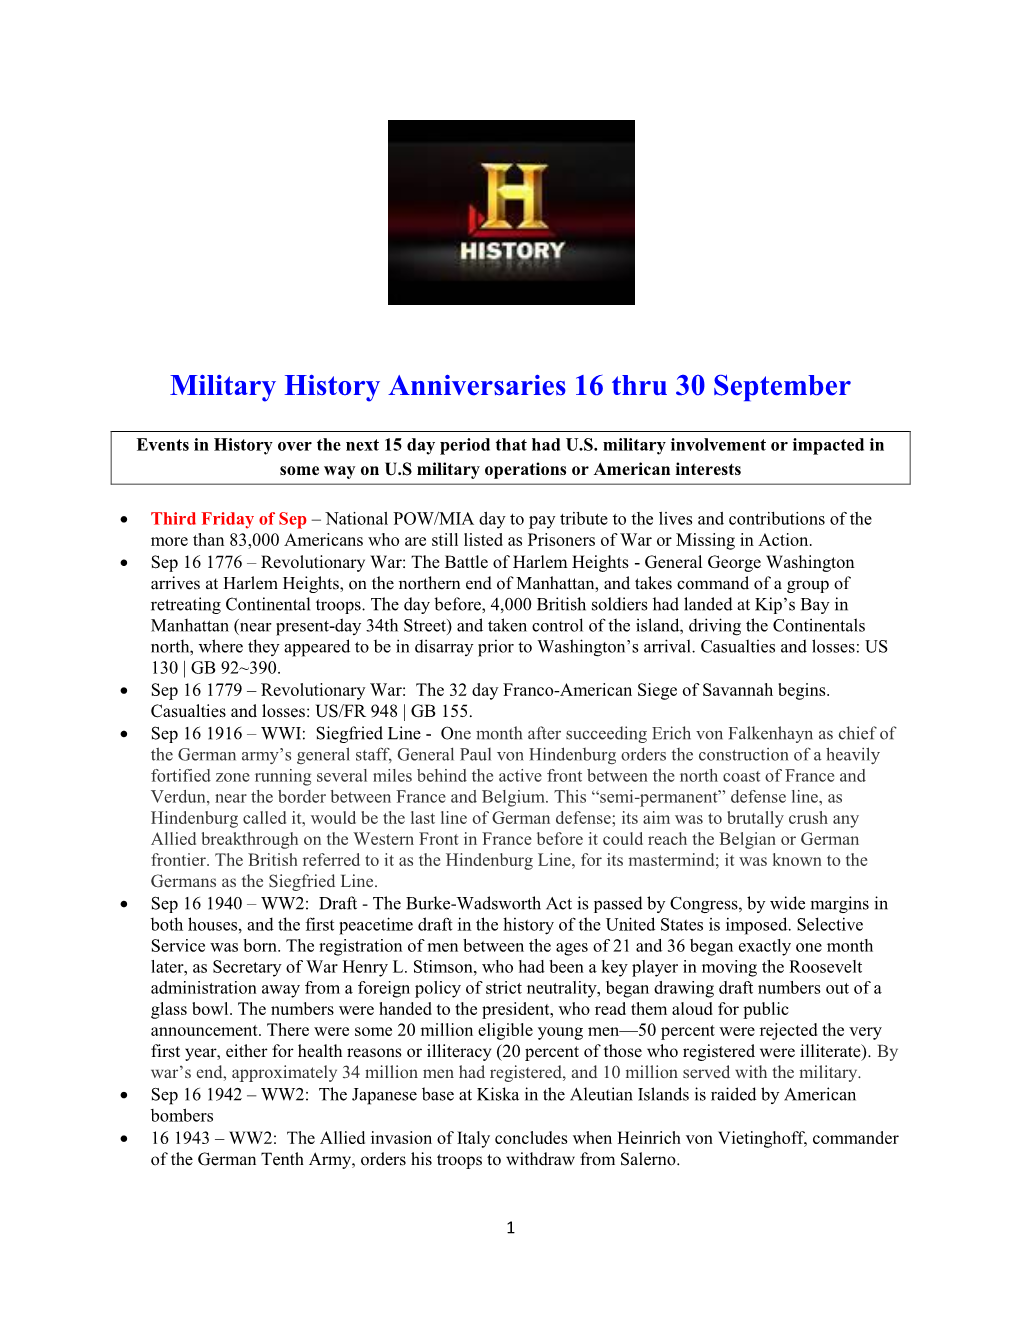 Military History Anniversaries 16 Thru 30 September